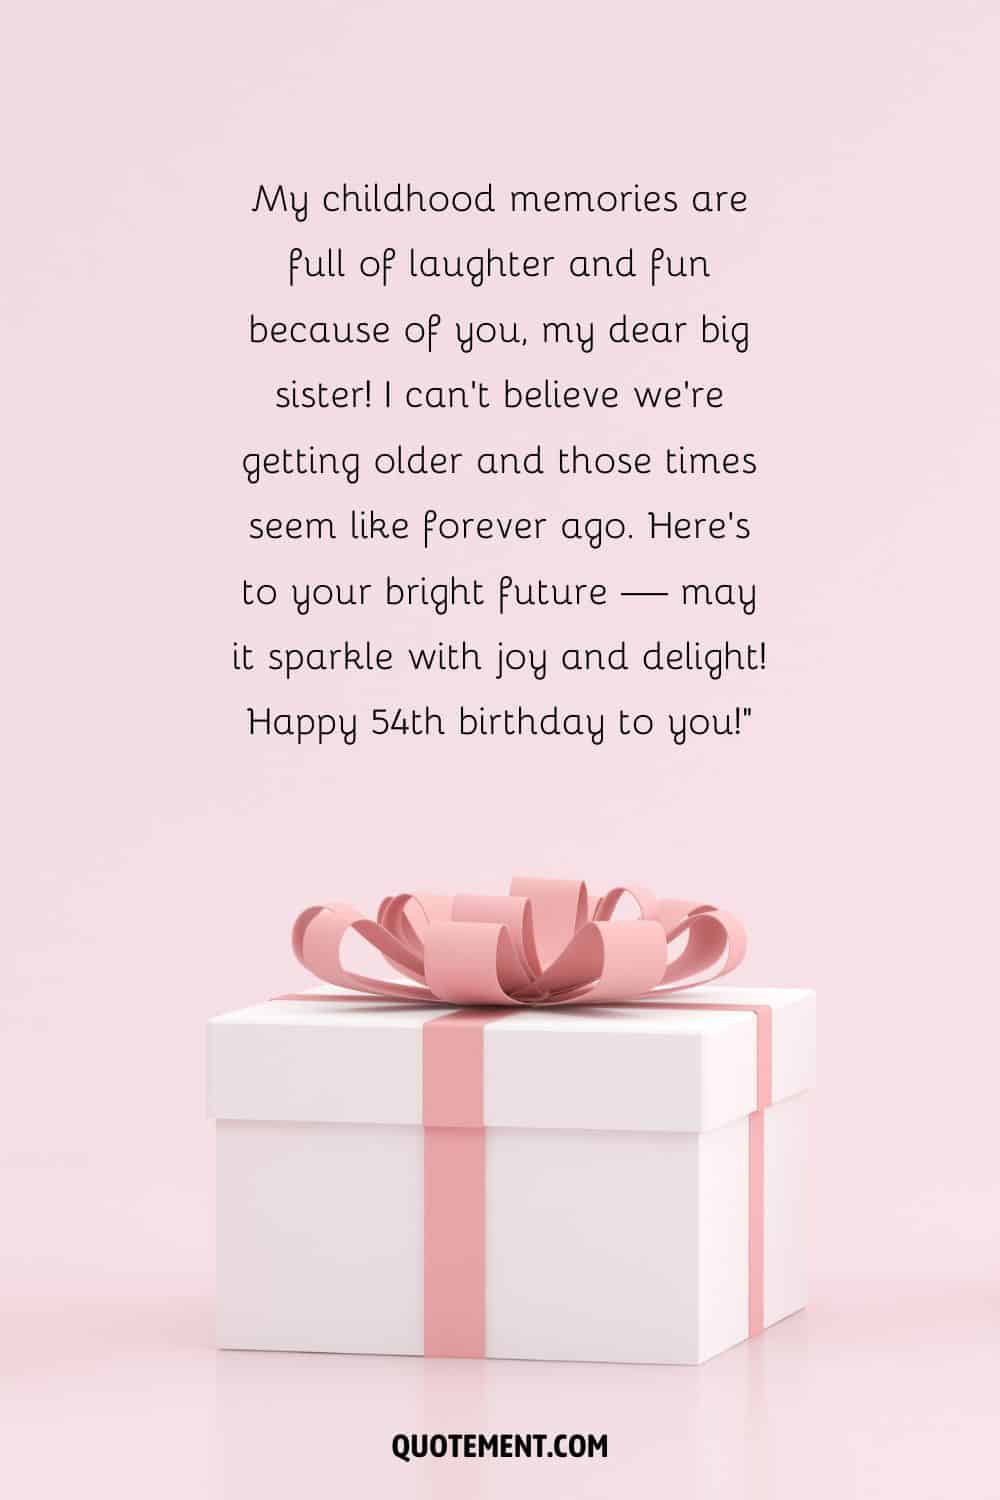 Mensaje para el 54 cumpleaños de una hermana y regalo con lazo rosa